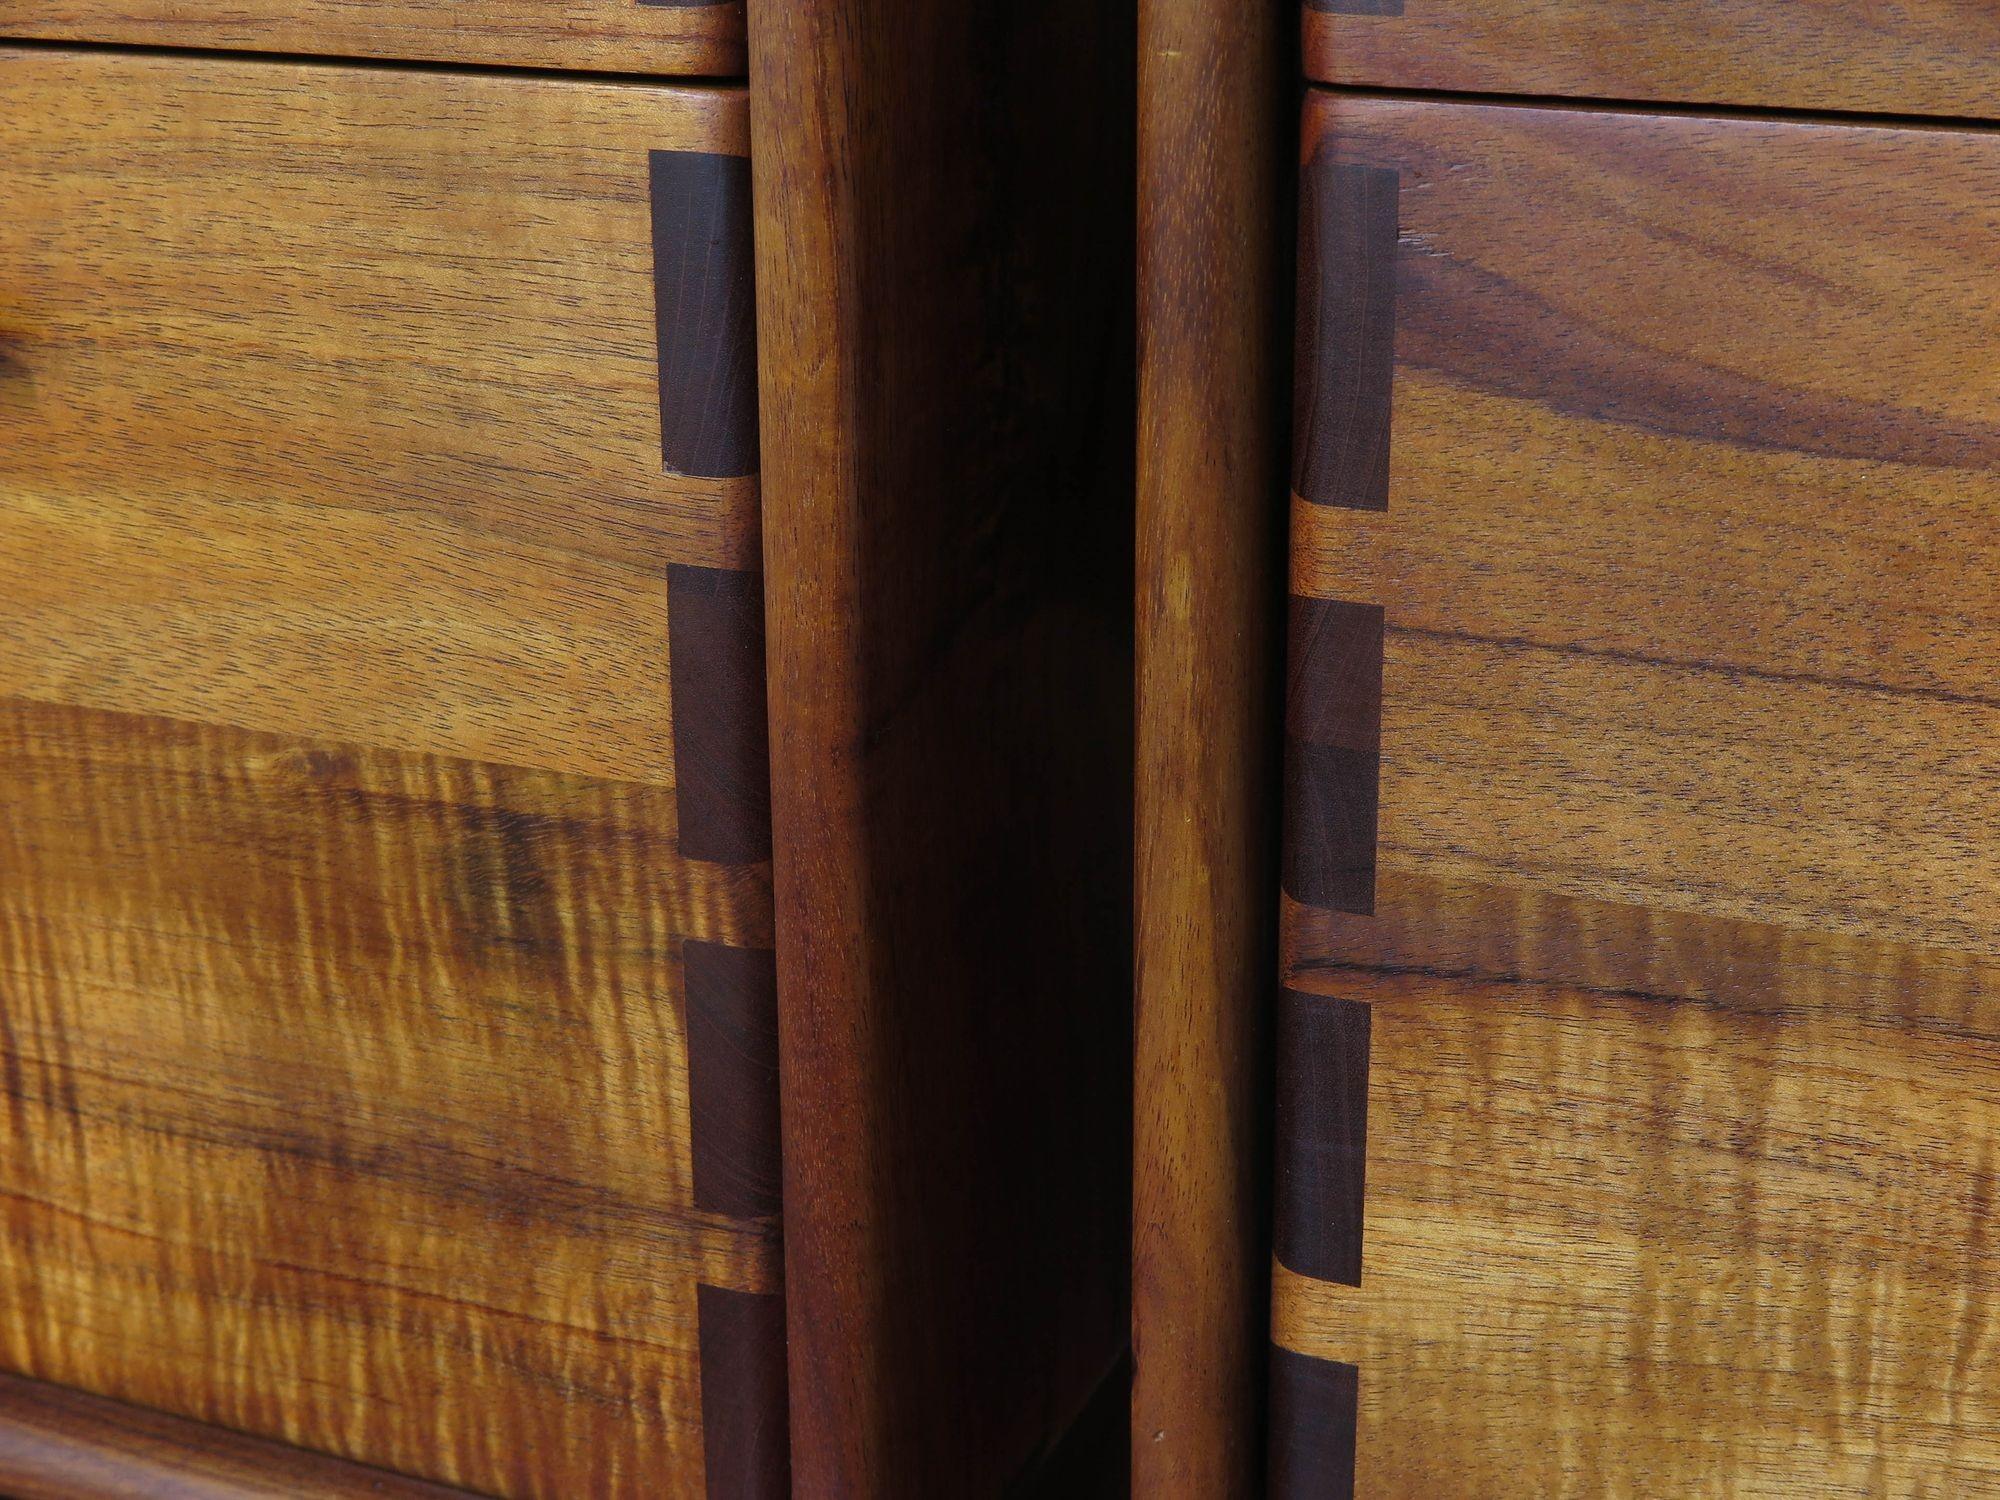 Paire de classeurs California studio craft conçus par Jim Sweeney, Berkeley, vers 1983. Les armoires sont fabriquées à la main en bois de Koa massif, et chacune comprend deux tiroirs de classement avec une menuiserie audacieusement exposée sur